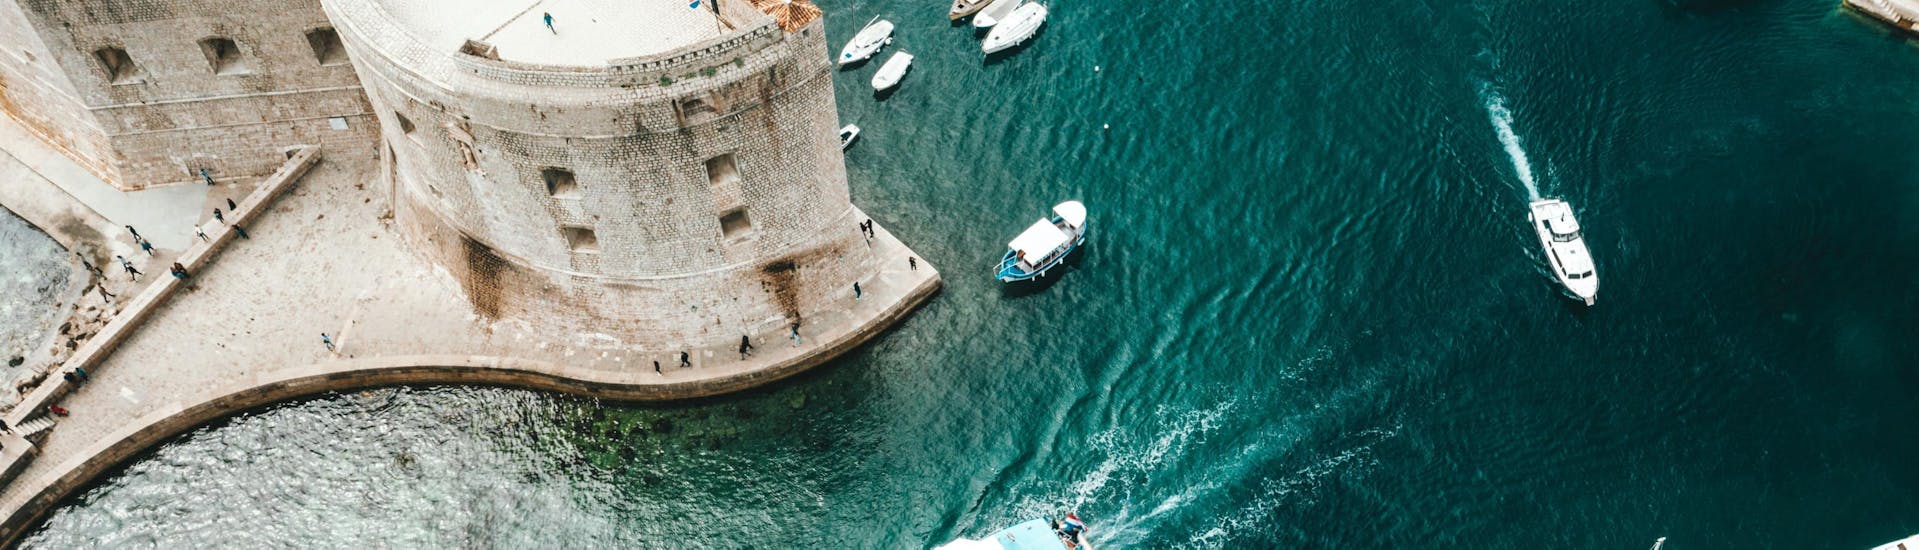 Gita in barca da Dubrovnik a Isola Koločep con bagno in mare e visita turistica.